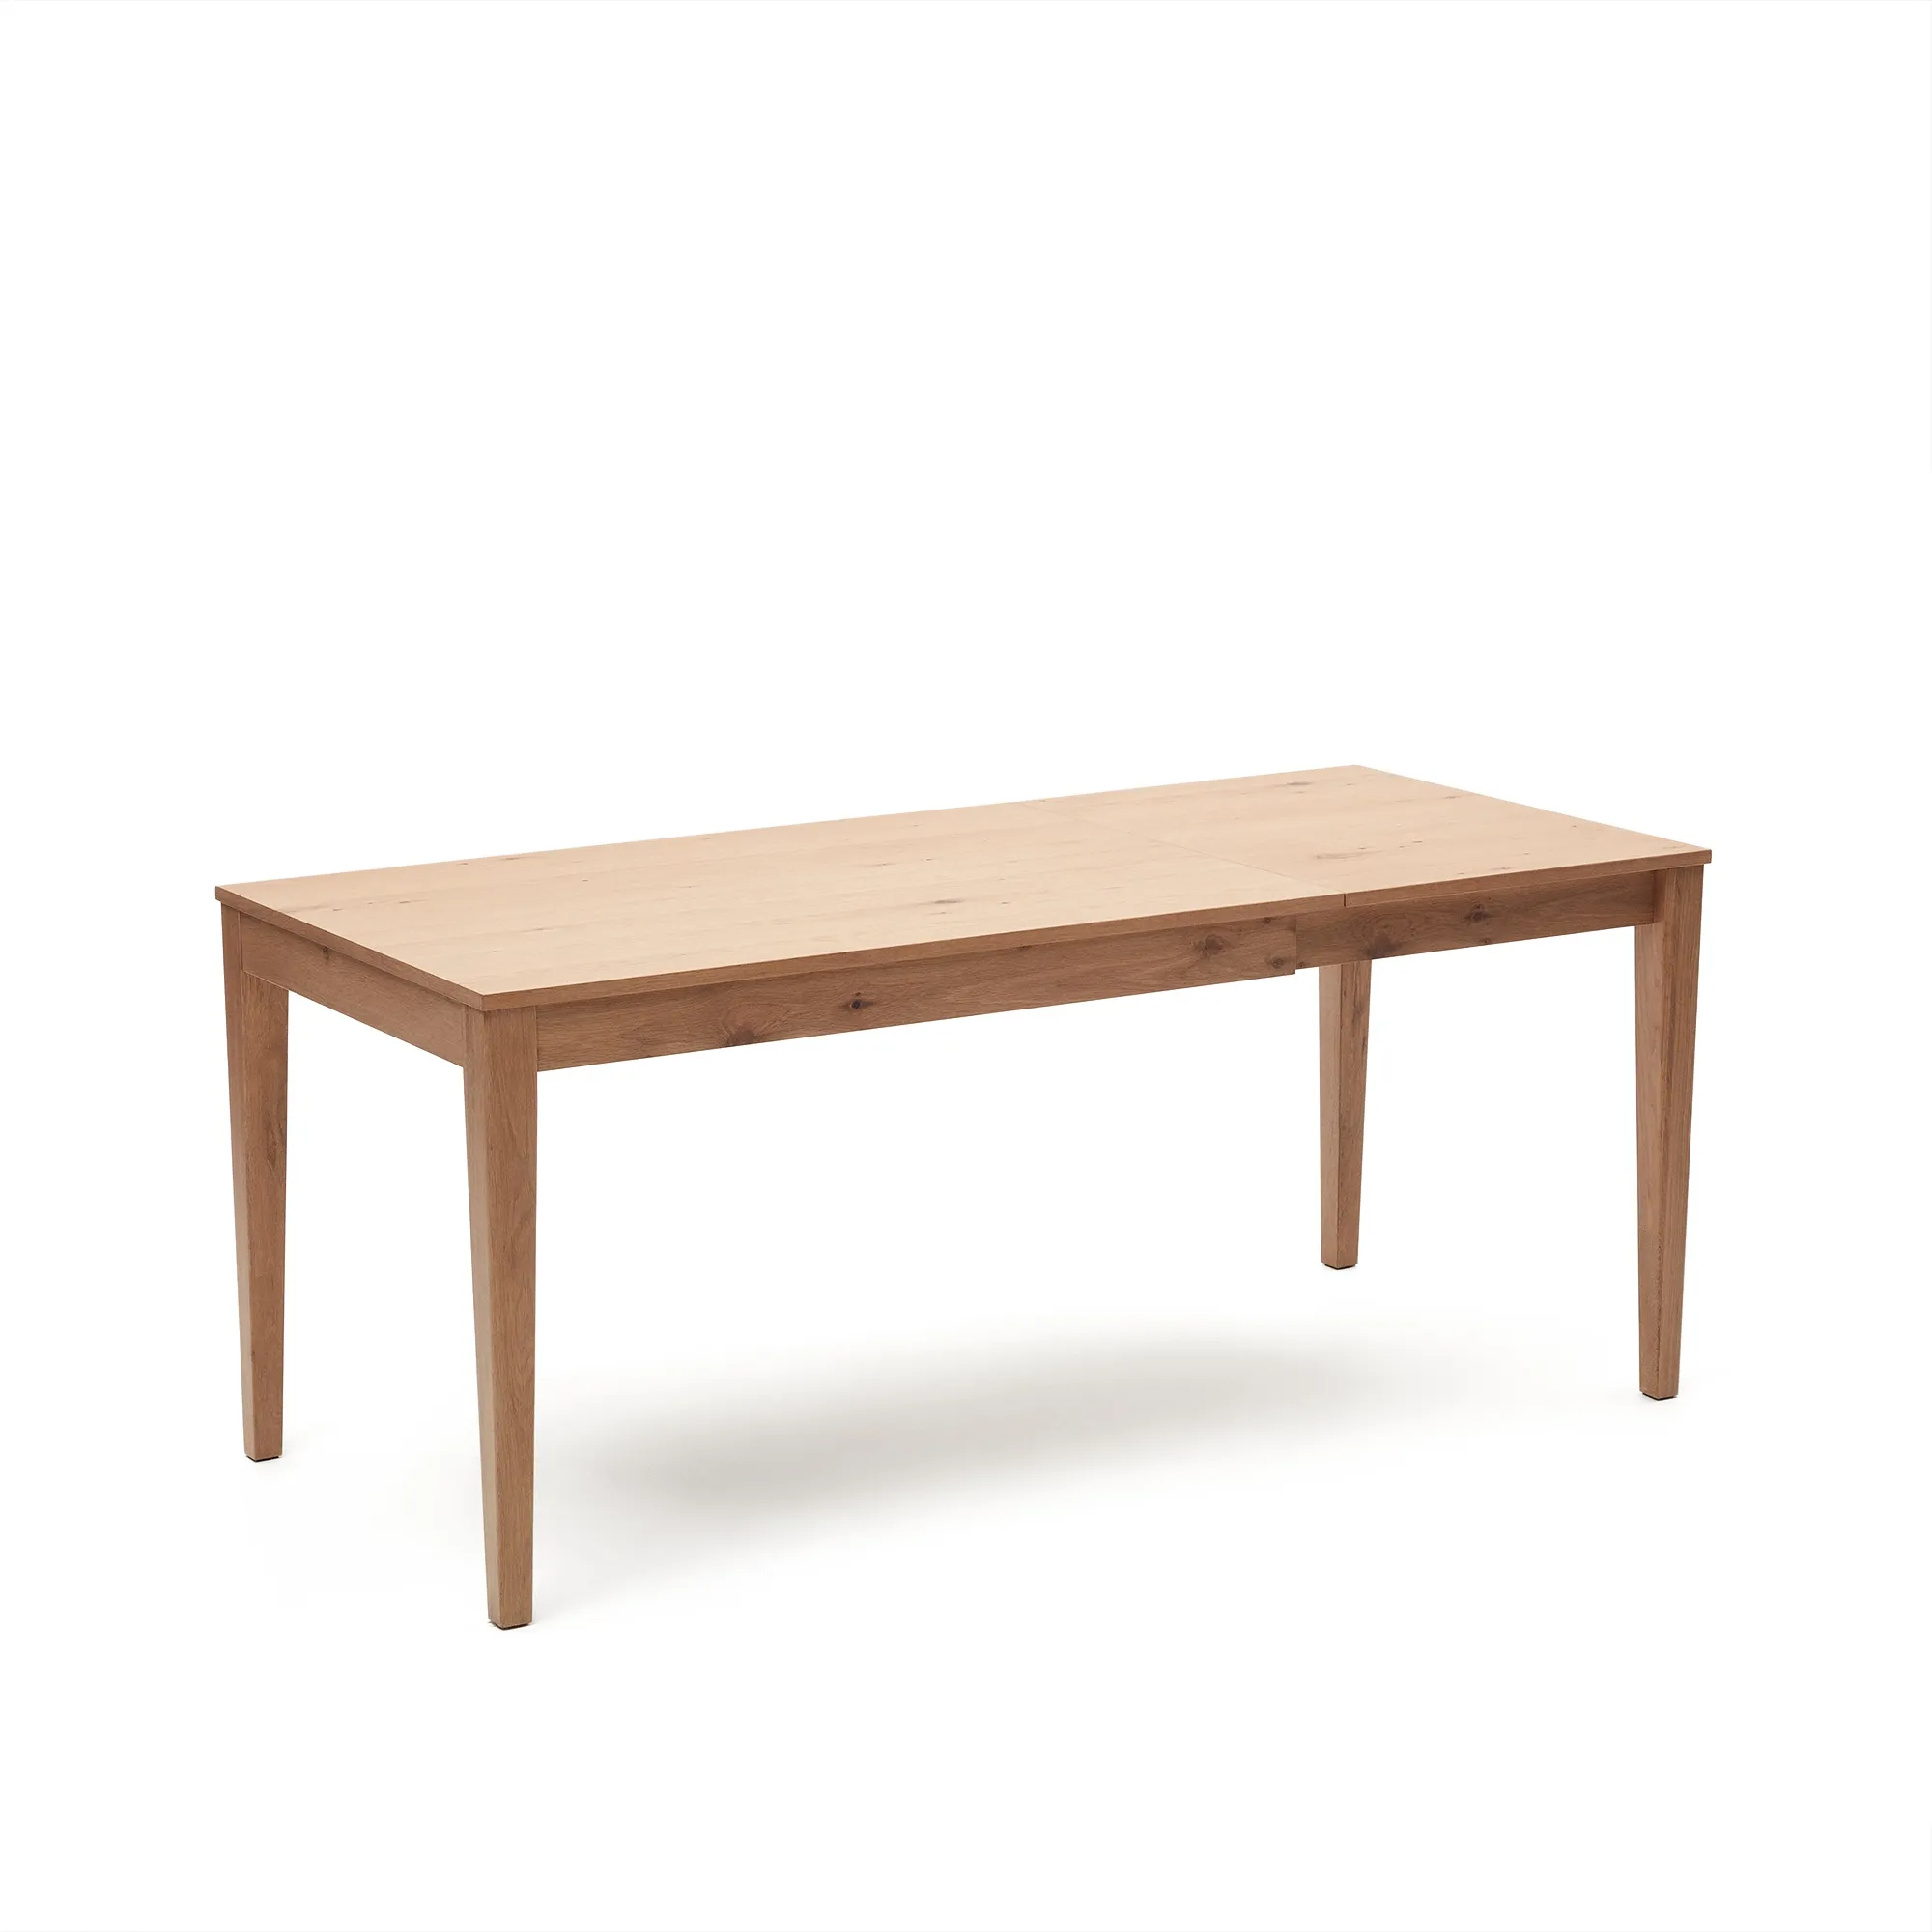 Раздвижной стол La Forma Yain шпон и массив дуба 120 (180) x 80 см 152838